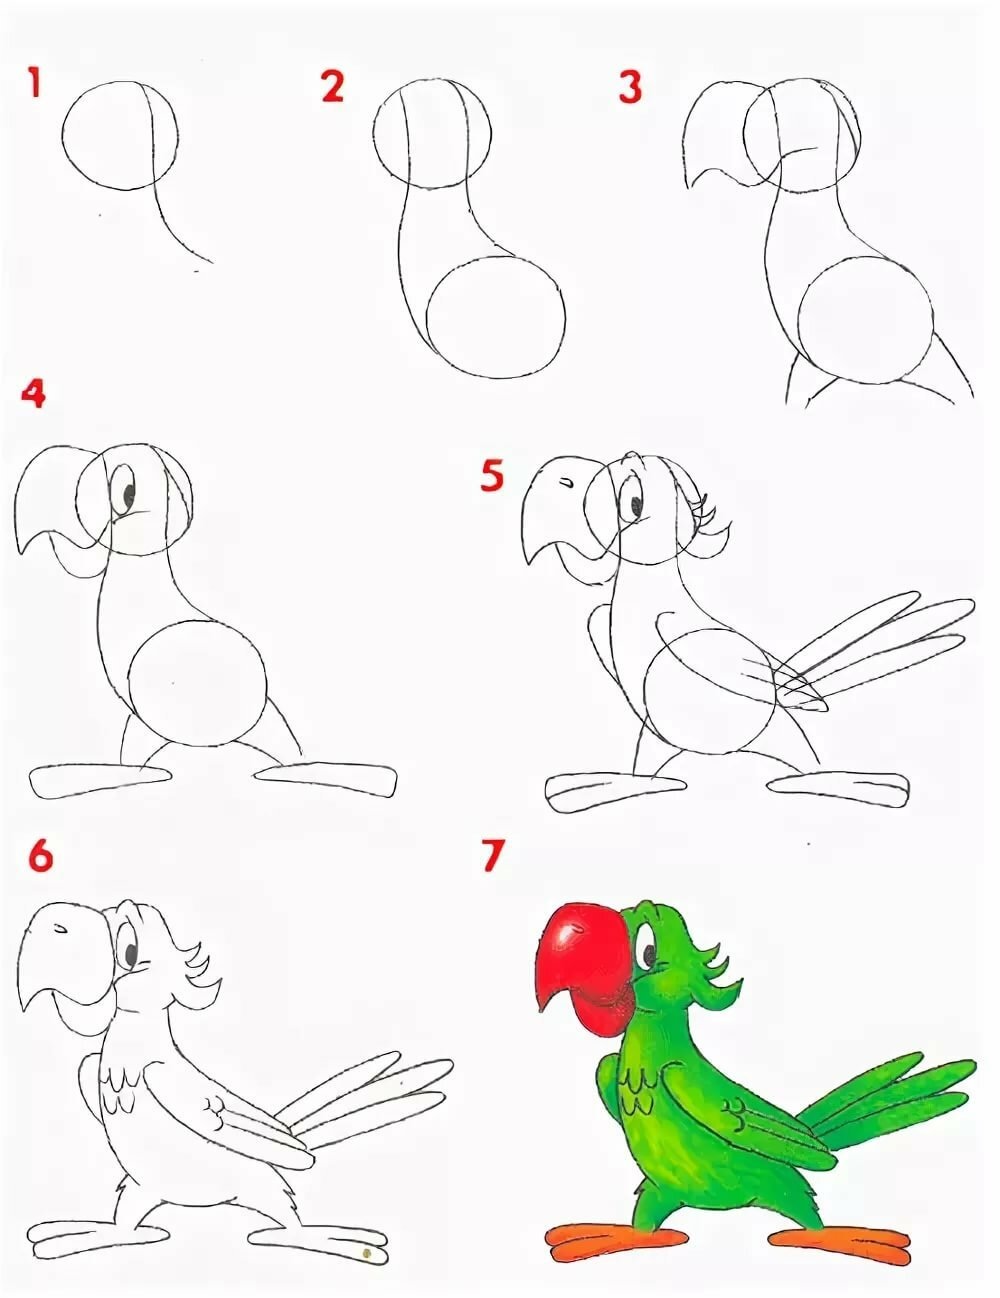 Картинки для начинающих. Пошаговое рисование. Поэтапное рисование карандашом. Поэтапное рисование животных. Уроки поэтапного рисования для детей.